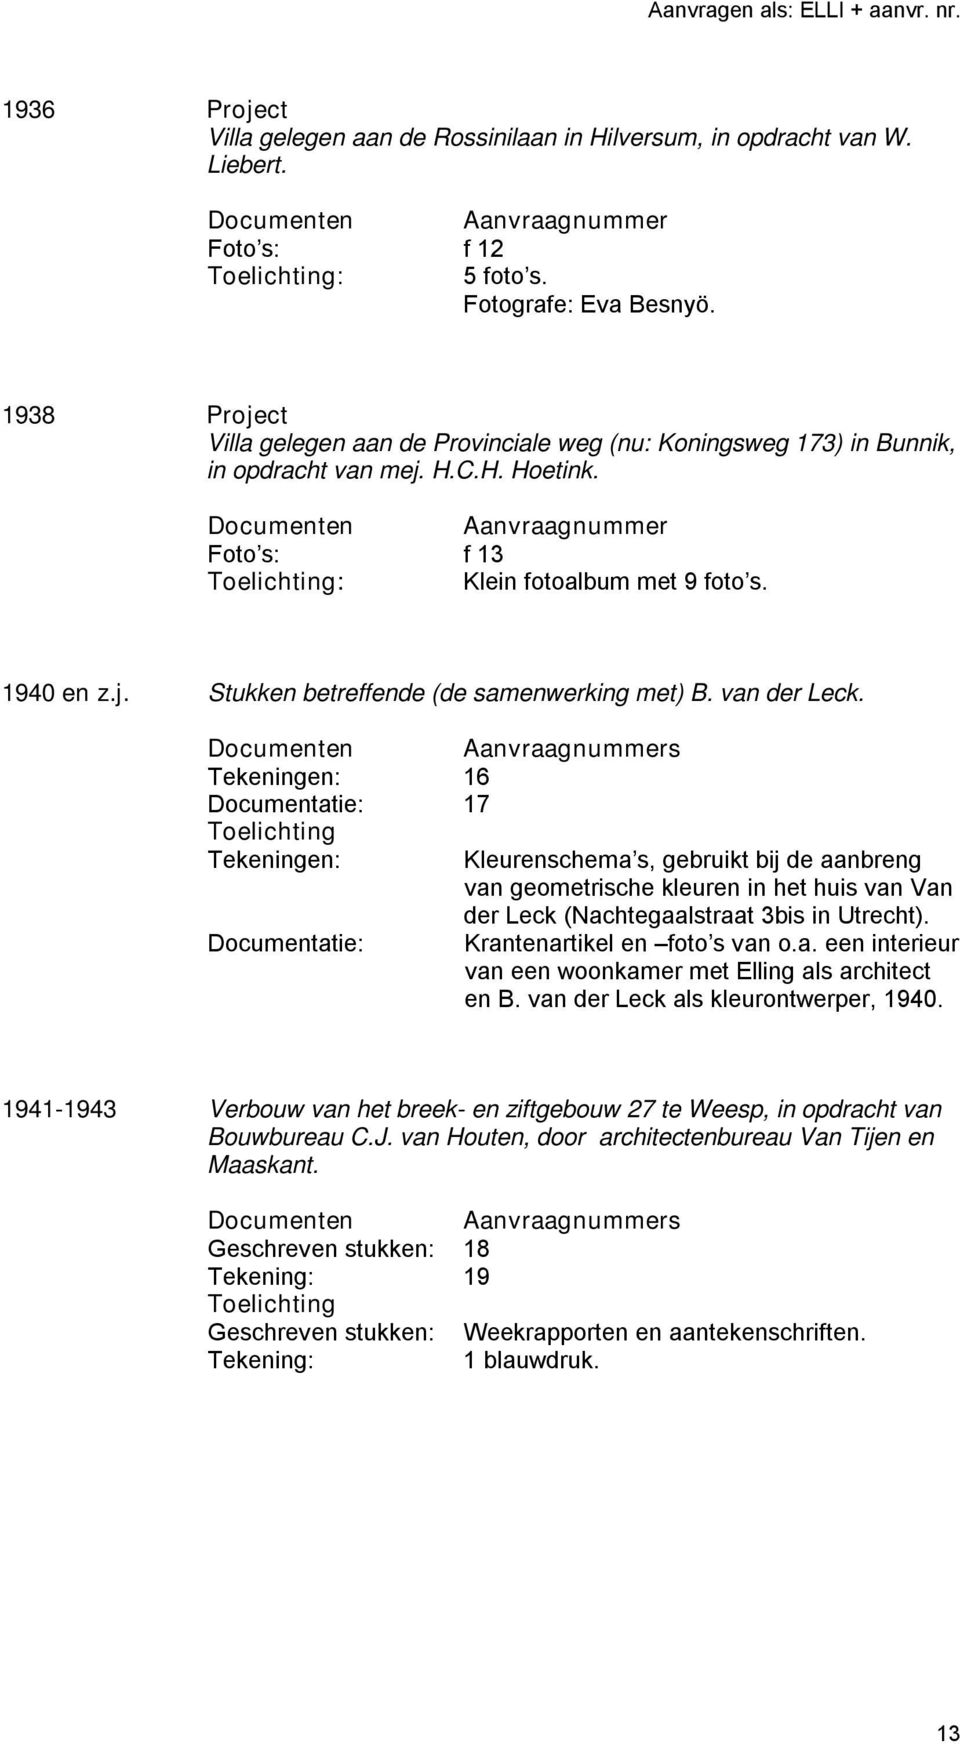 1940 en Stukken betreffende (de samenwerking met) B. van der Leck.